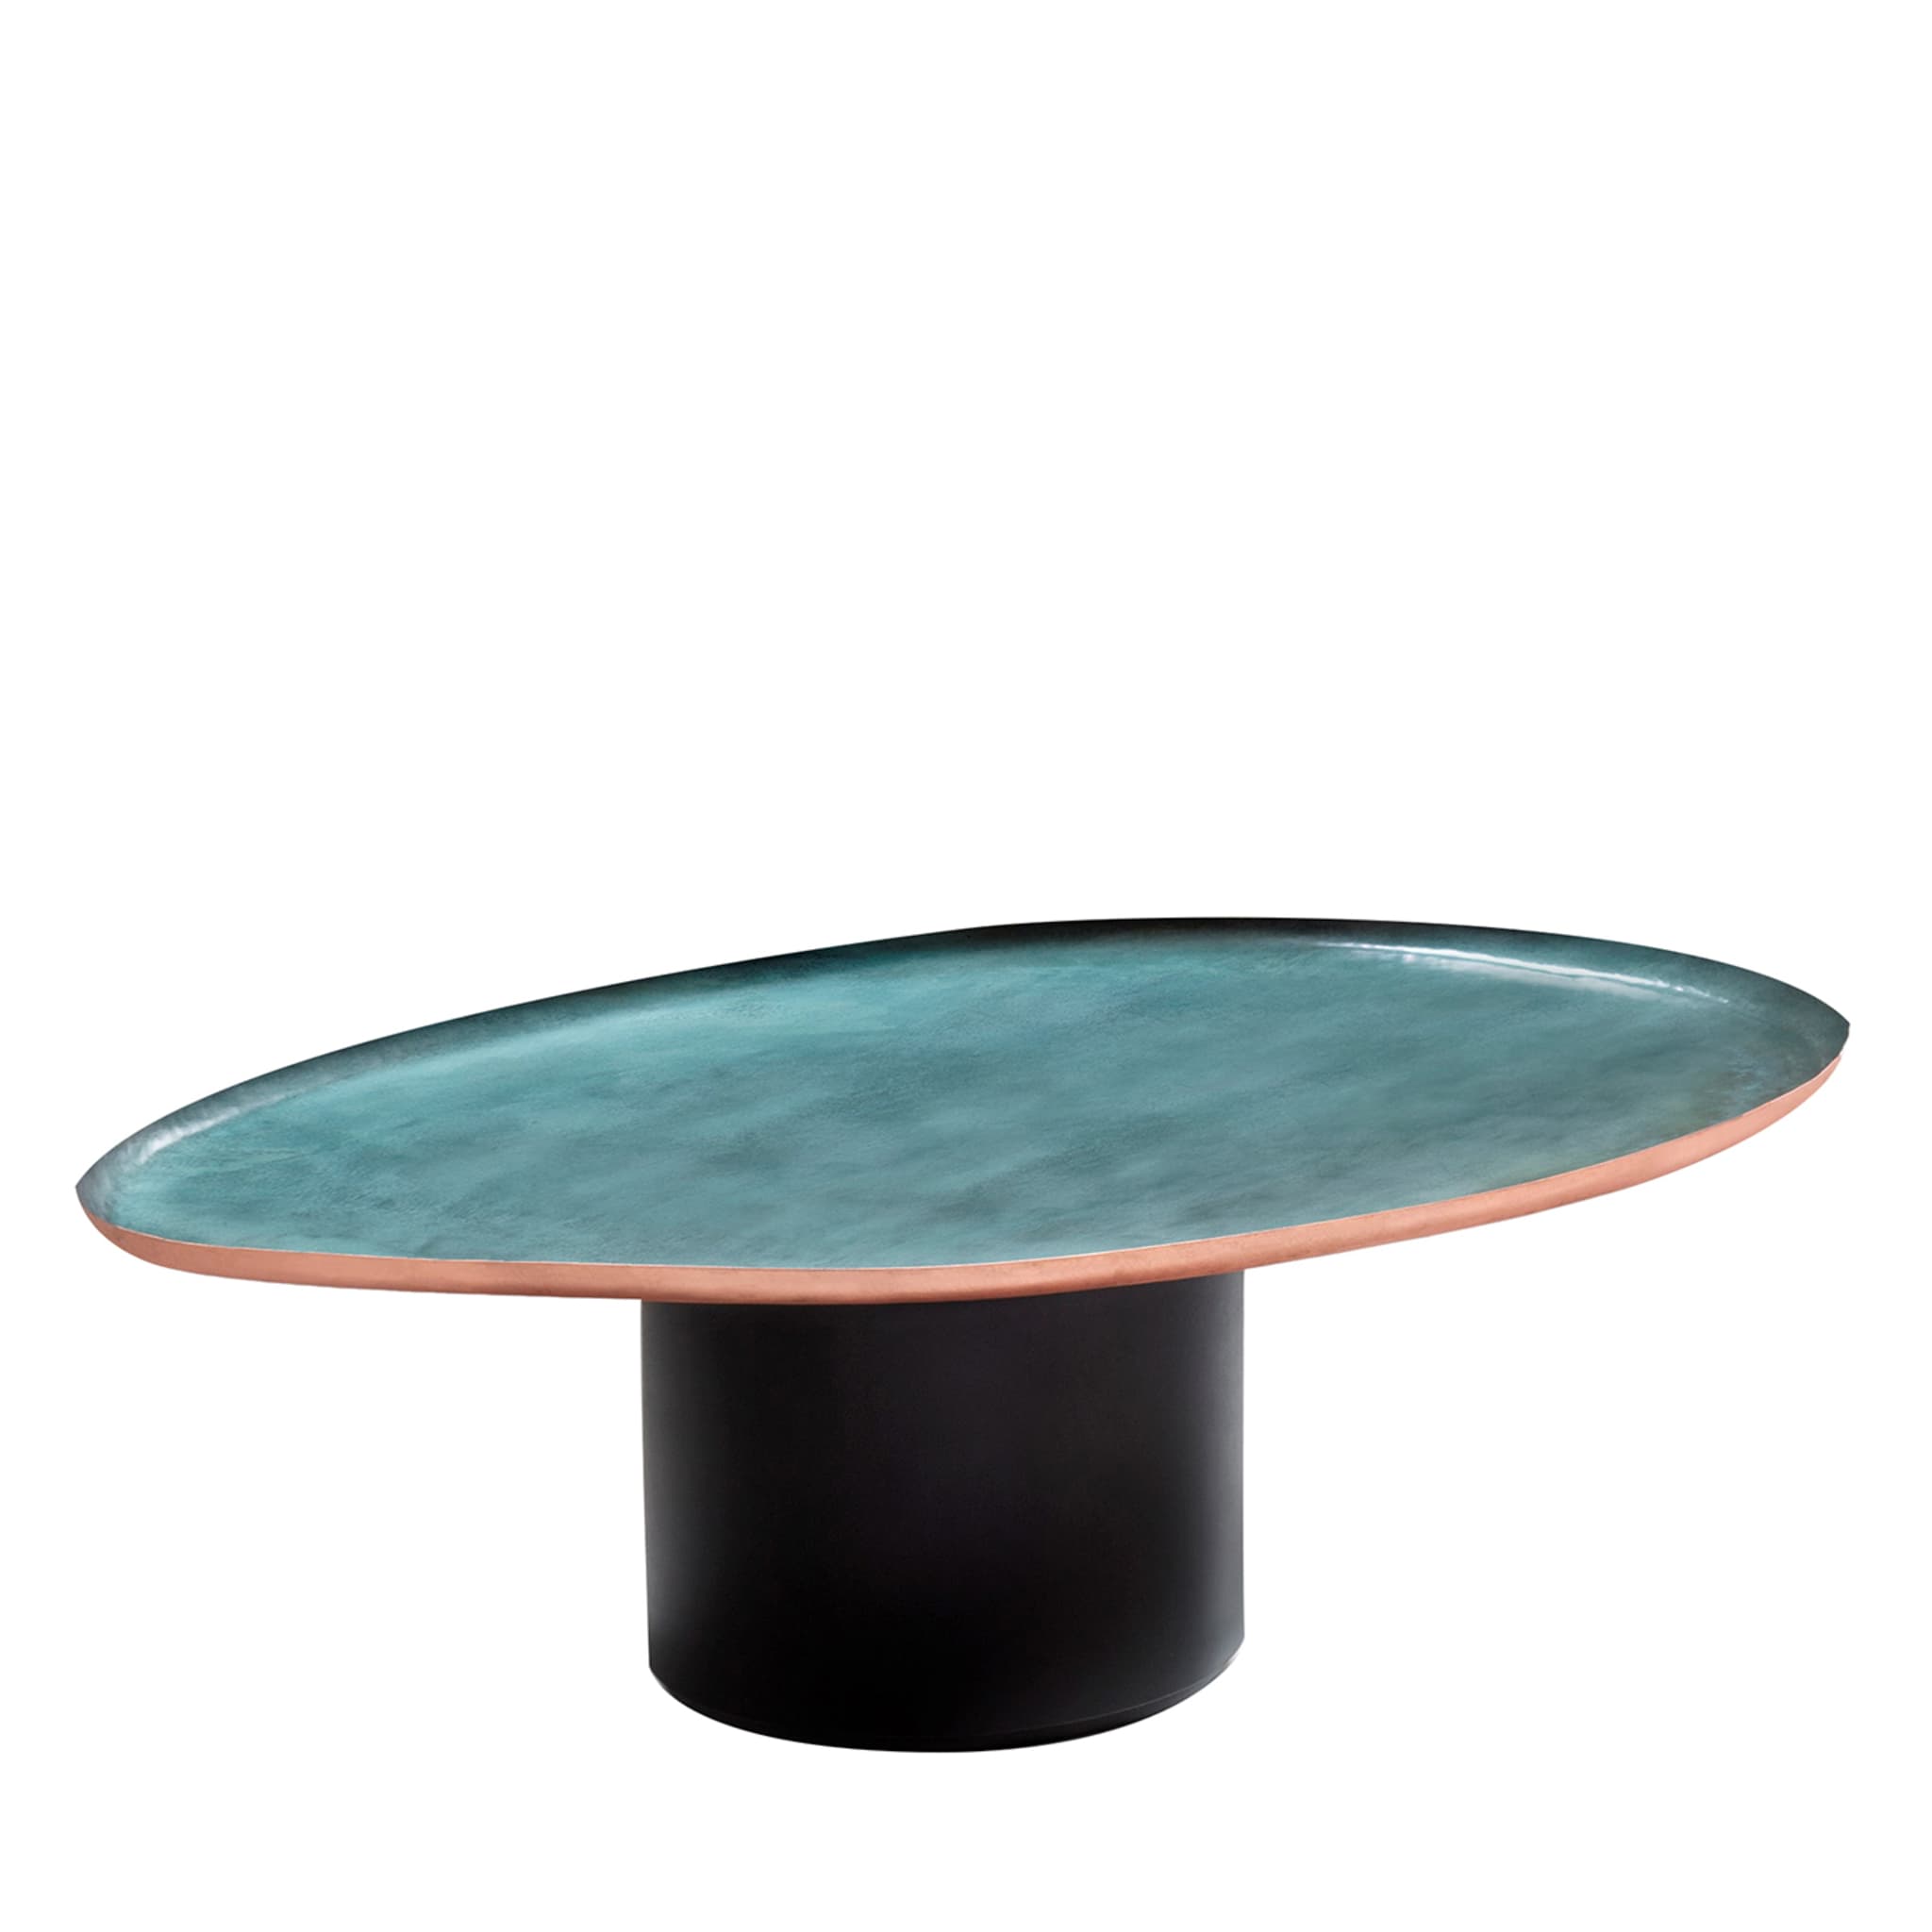 Drops Low Side Table by Zanellato & Bortotto - Main view